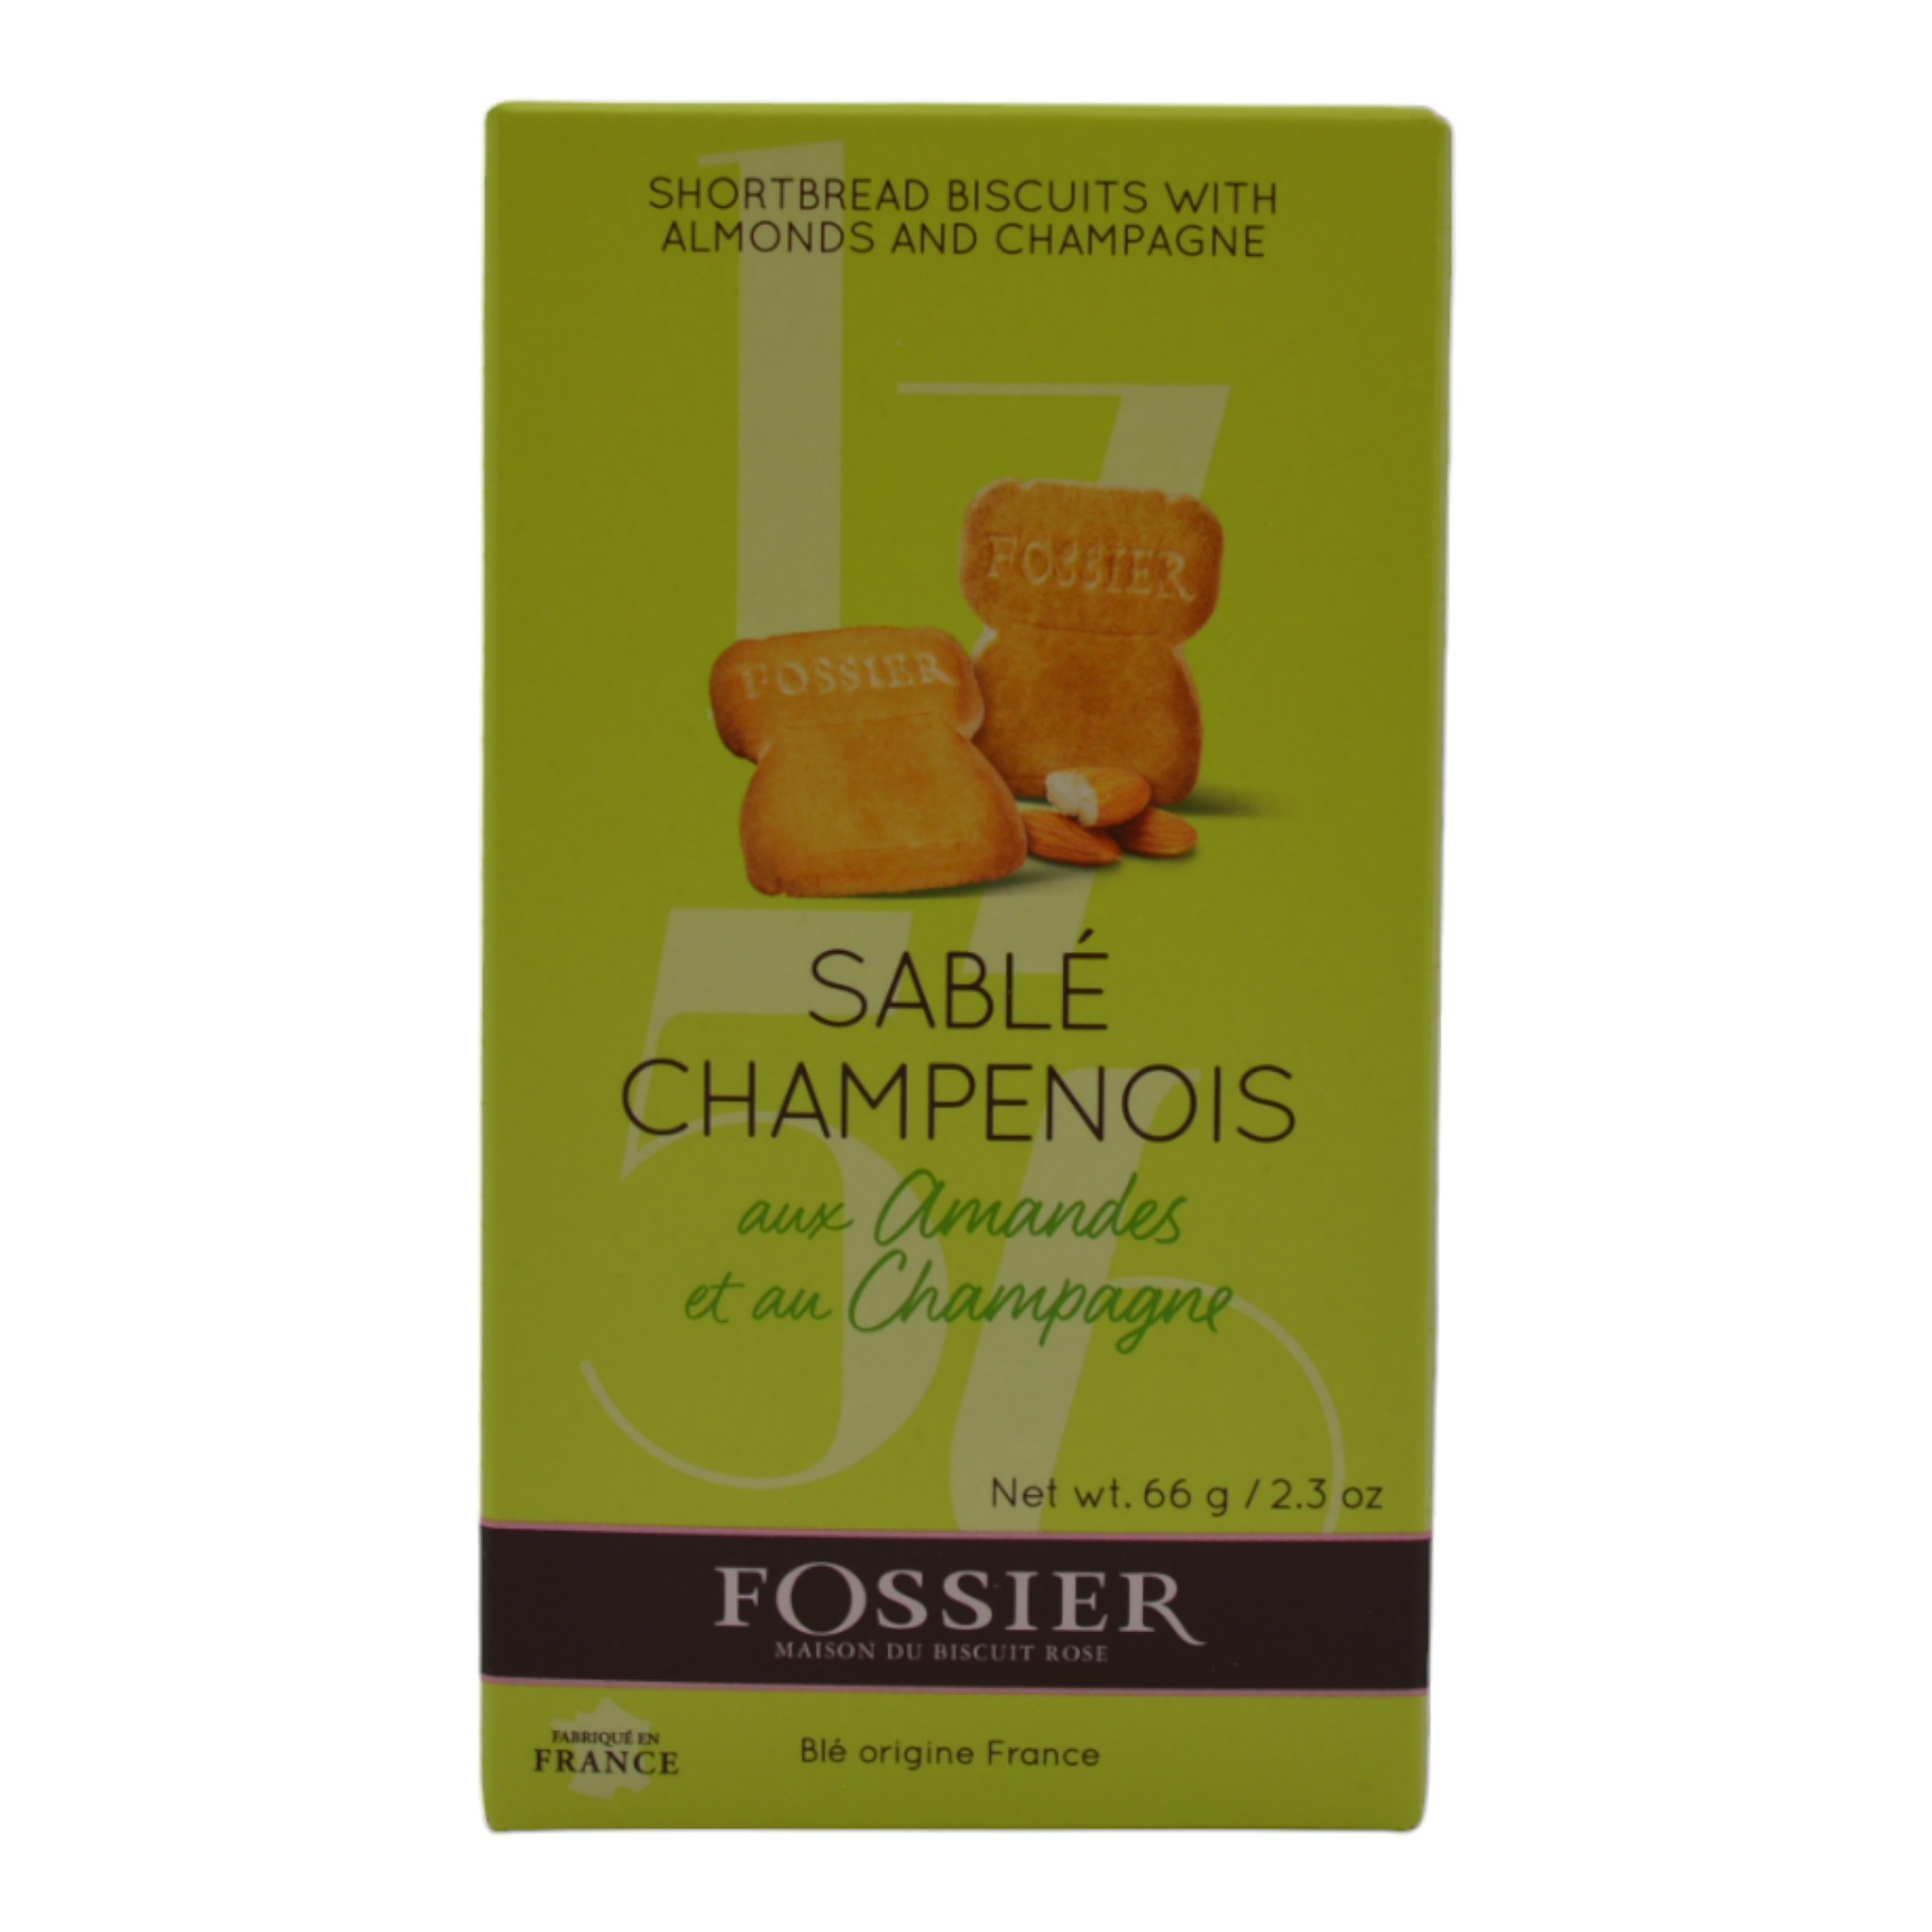 00007Fossier Sable Champenois aux Amandes et au Champagne f